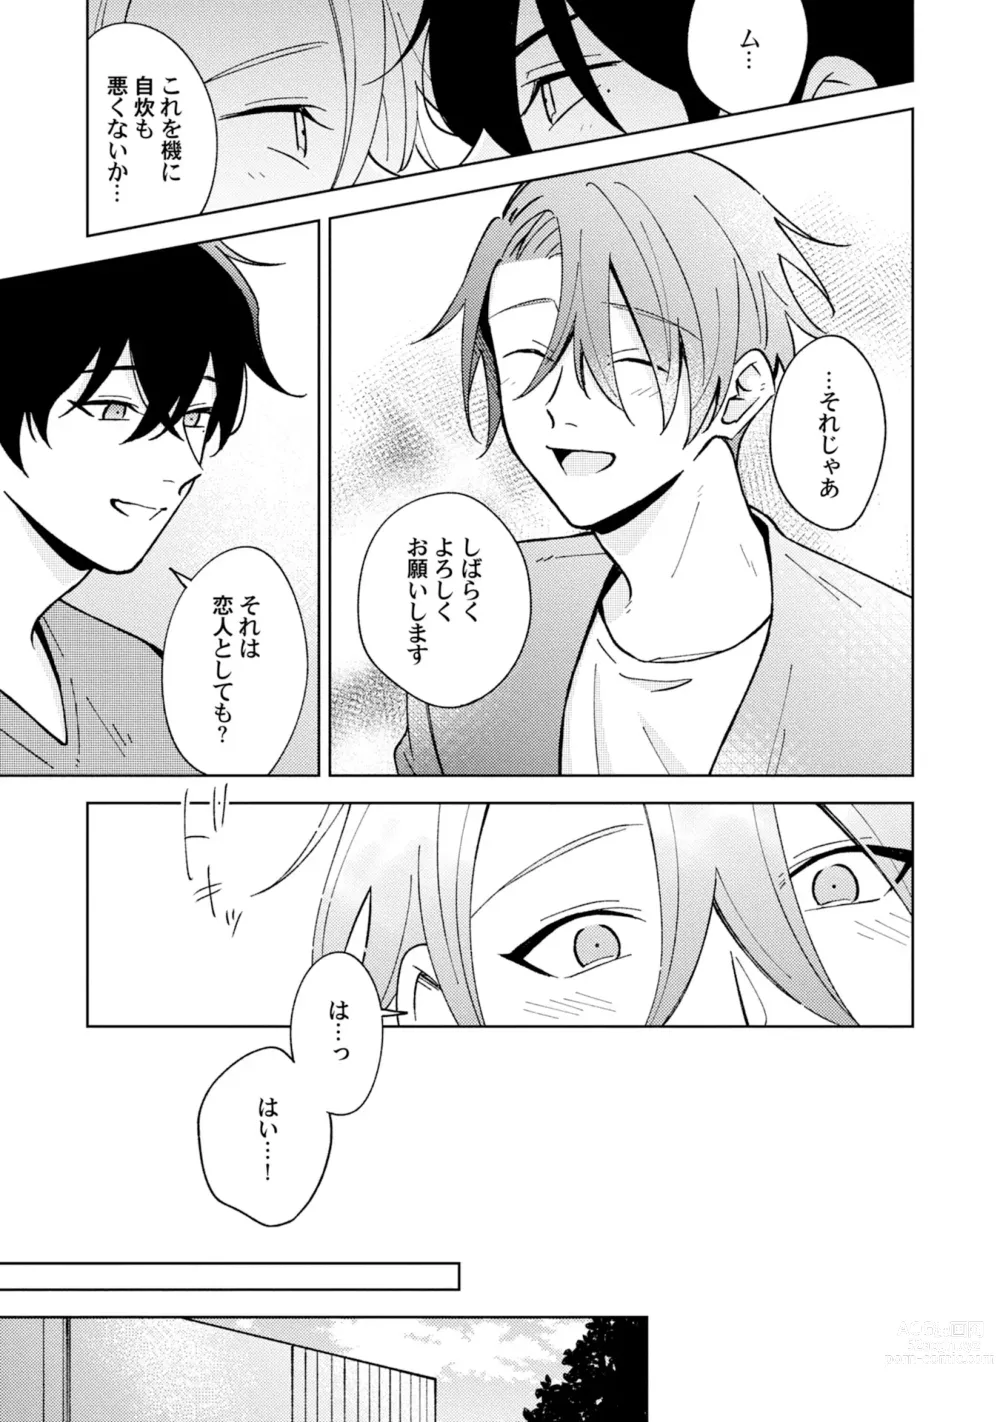 Page 23 of manga Toho 3-byou no Trouble Love Room 5